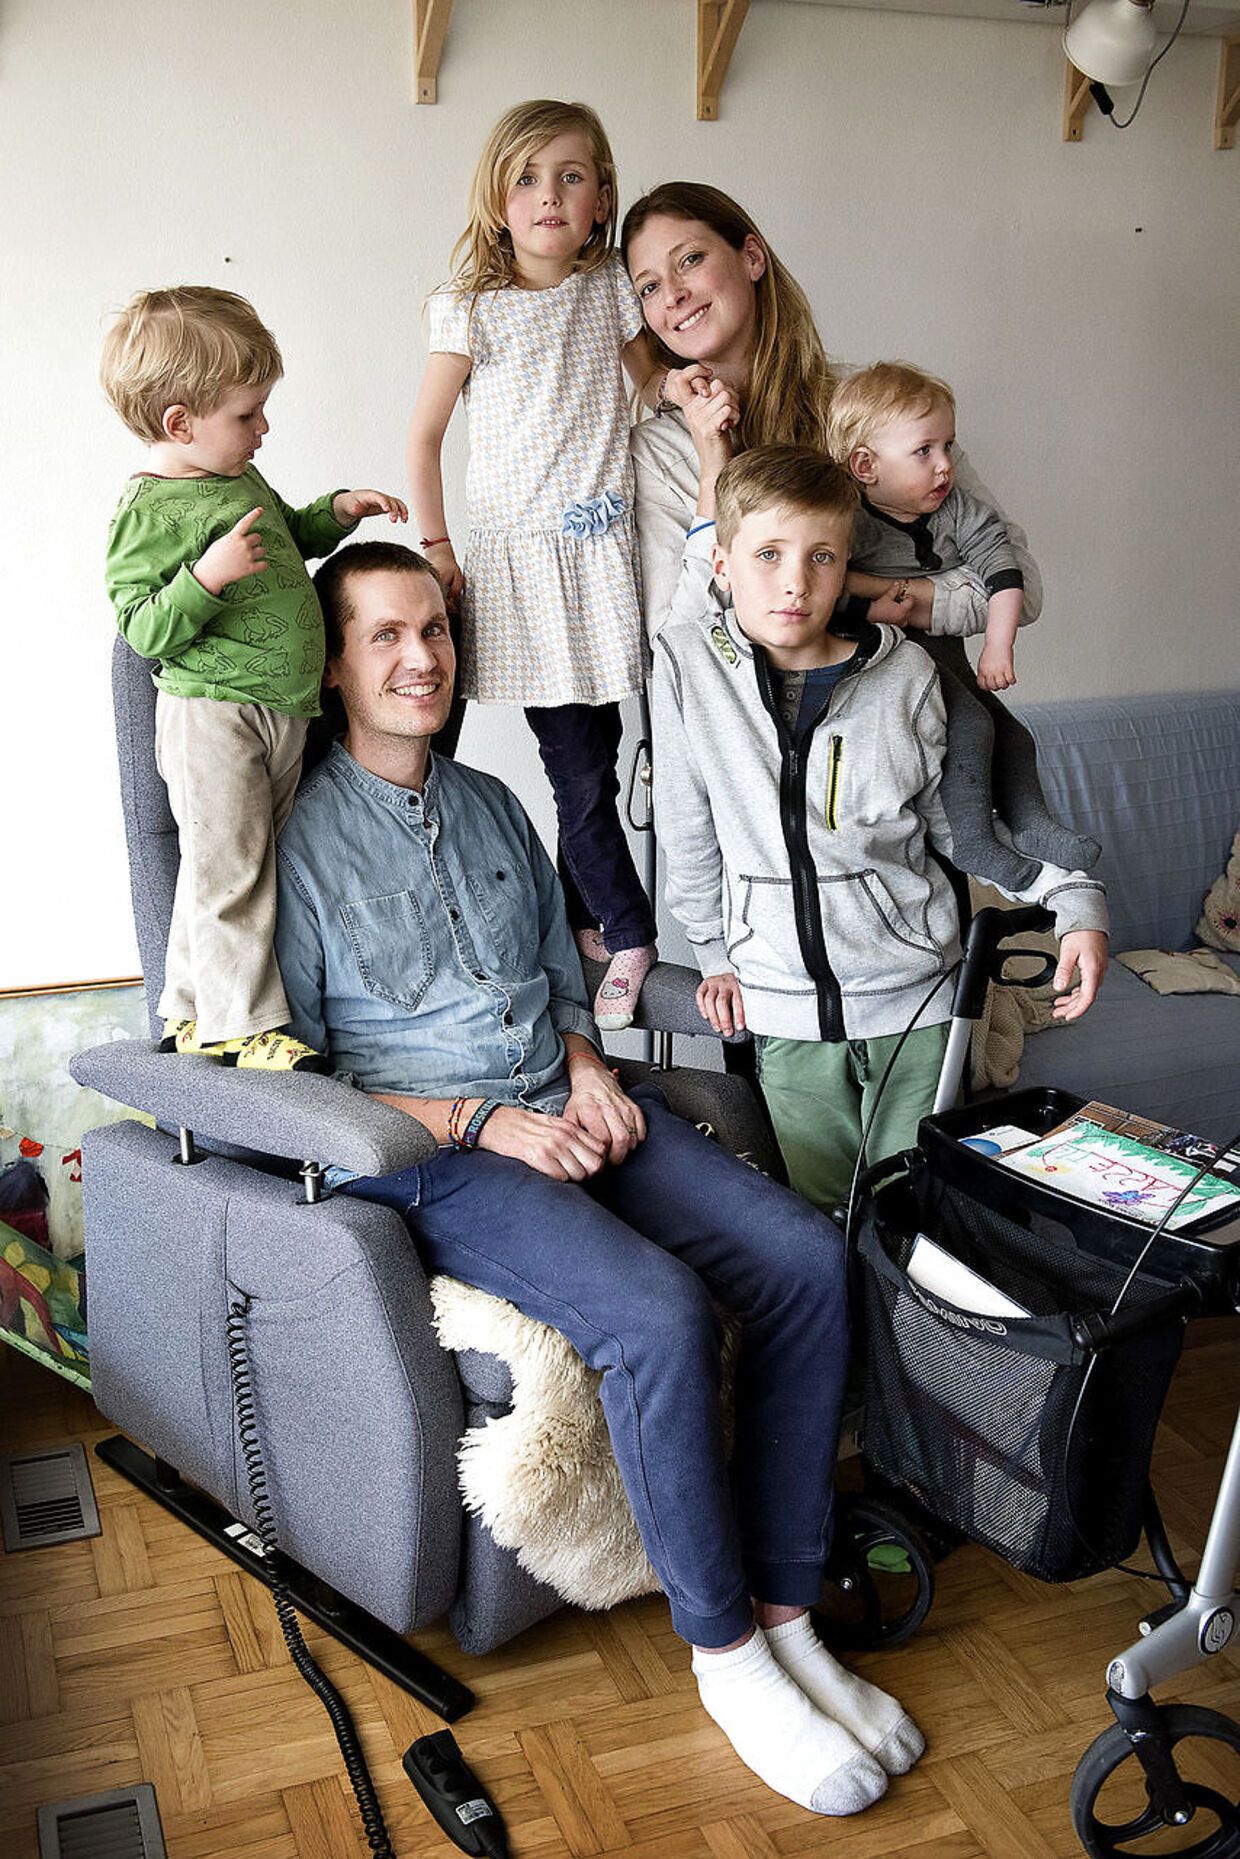 B.T. besøgte Lasse i marts 2016. Her ses han sammen med sin kone, Ina, og deres fire børn, Hugo, Albert, Viola og Karlo. Lasse boede på det tidspunkt stadig hjemme hos familien.